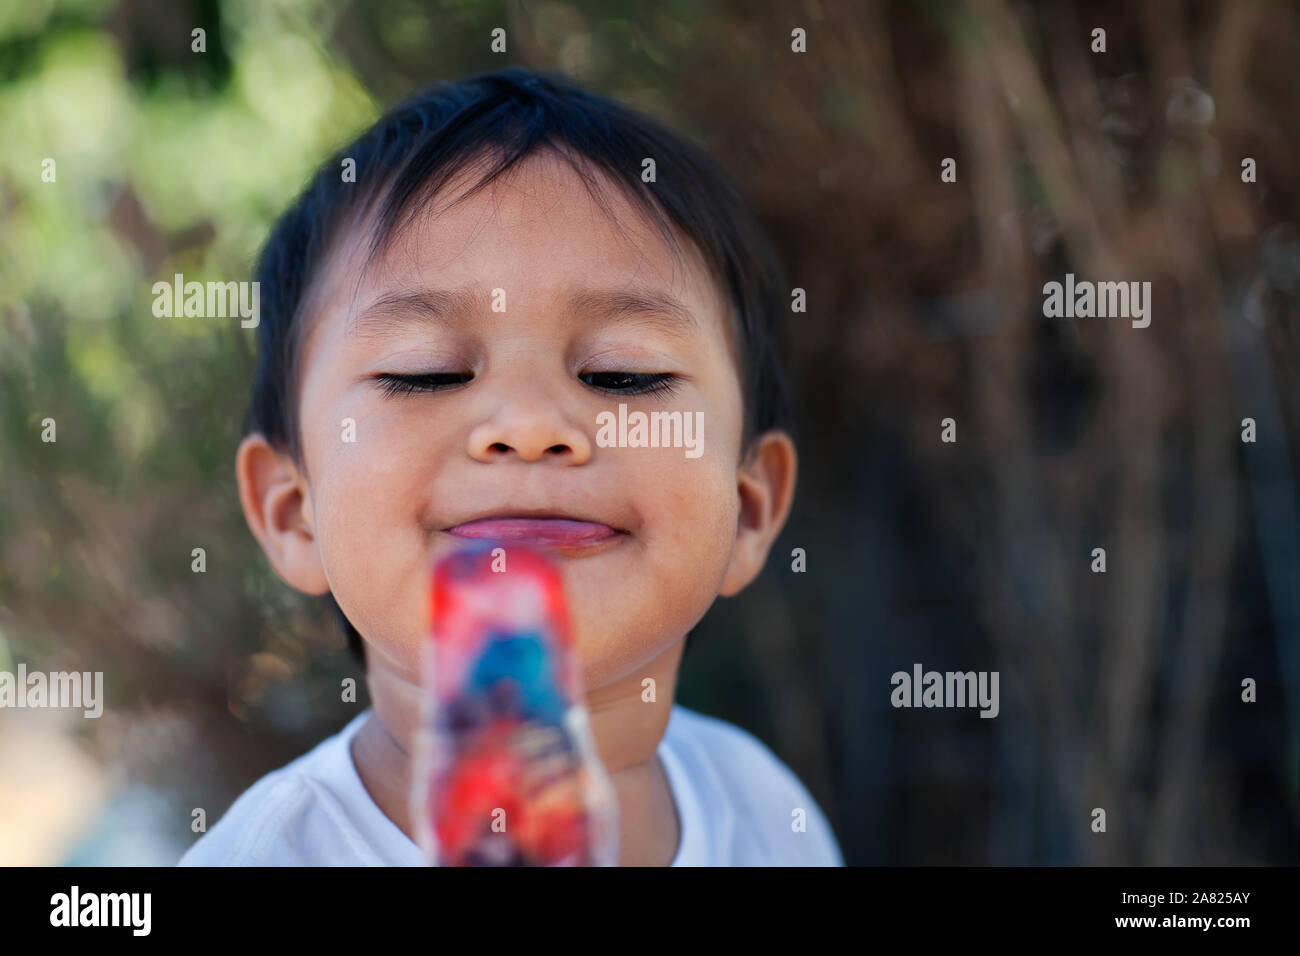 Ein Junge mit einem gefrorenem Eis pop Behandeln mit einem großen Lächeln auf seinem Gesicht. Stockfoto